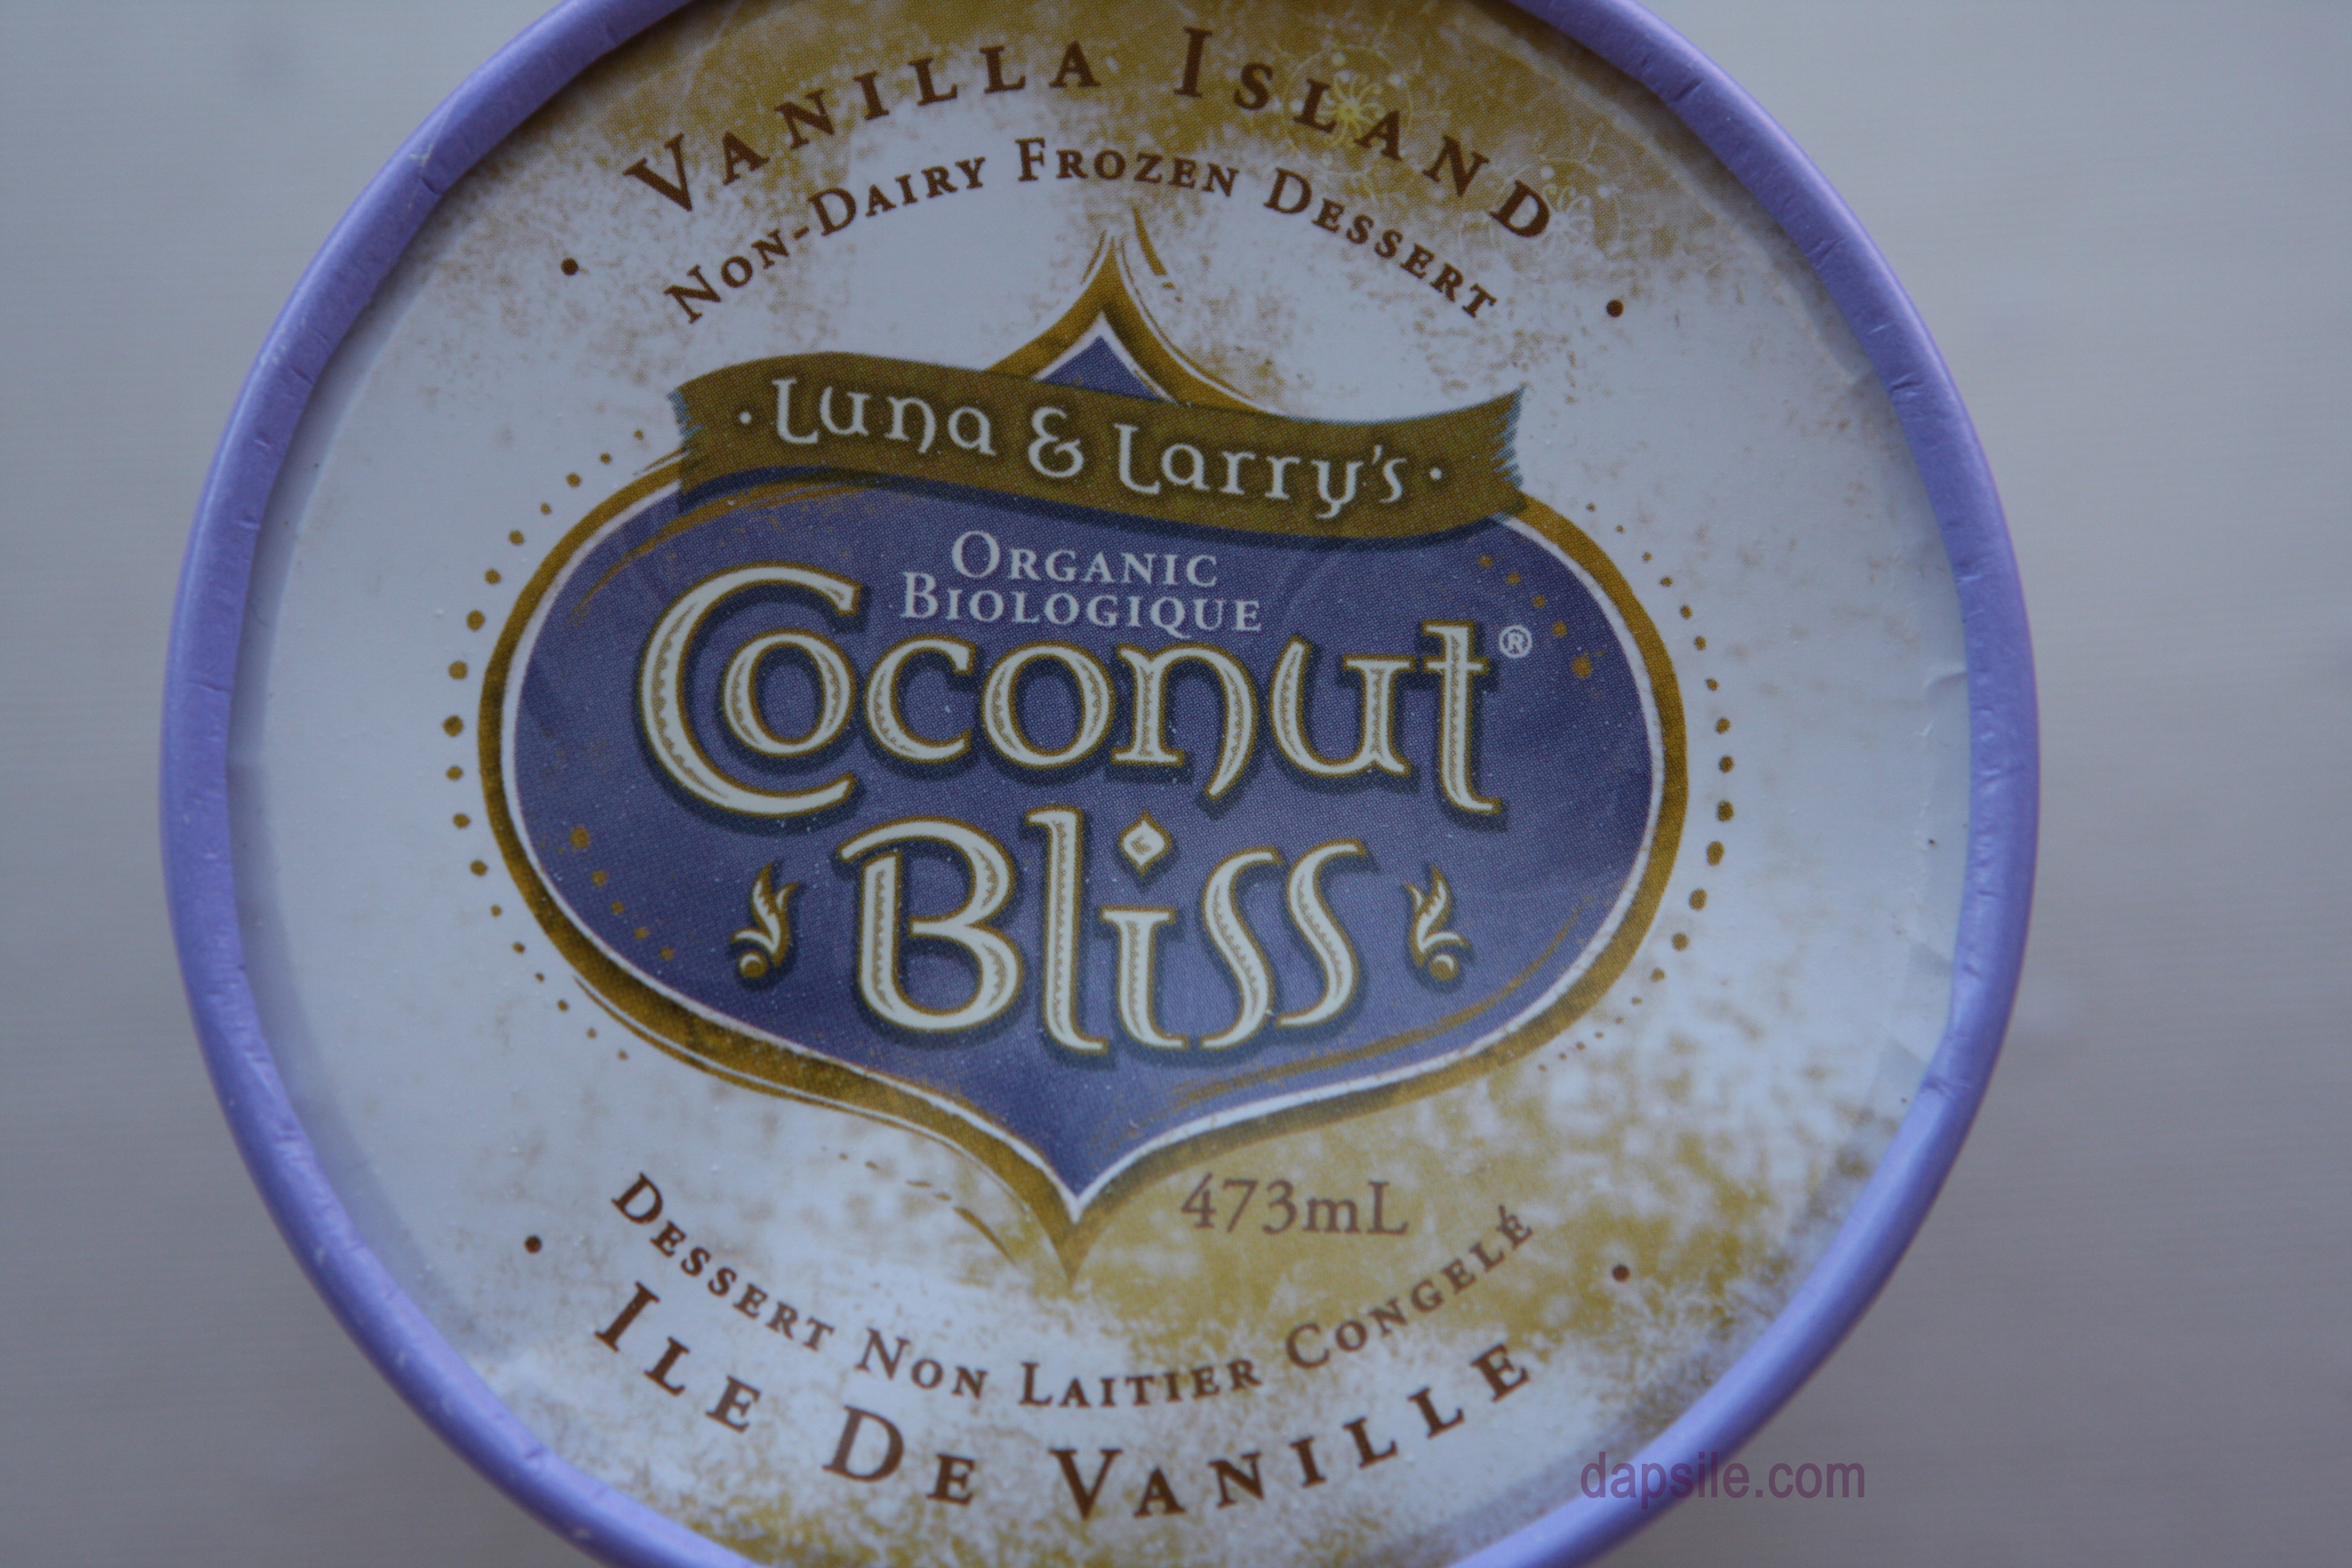 Mmmmm some healthier frozen treats – Coconut Bliss